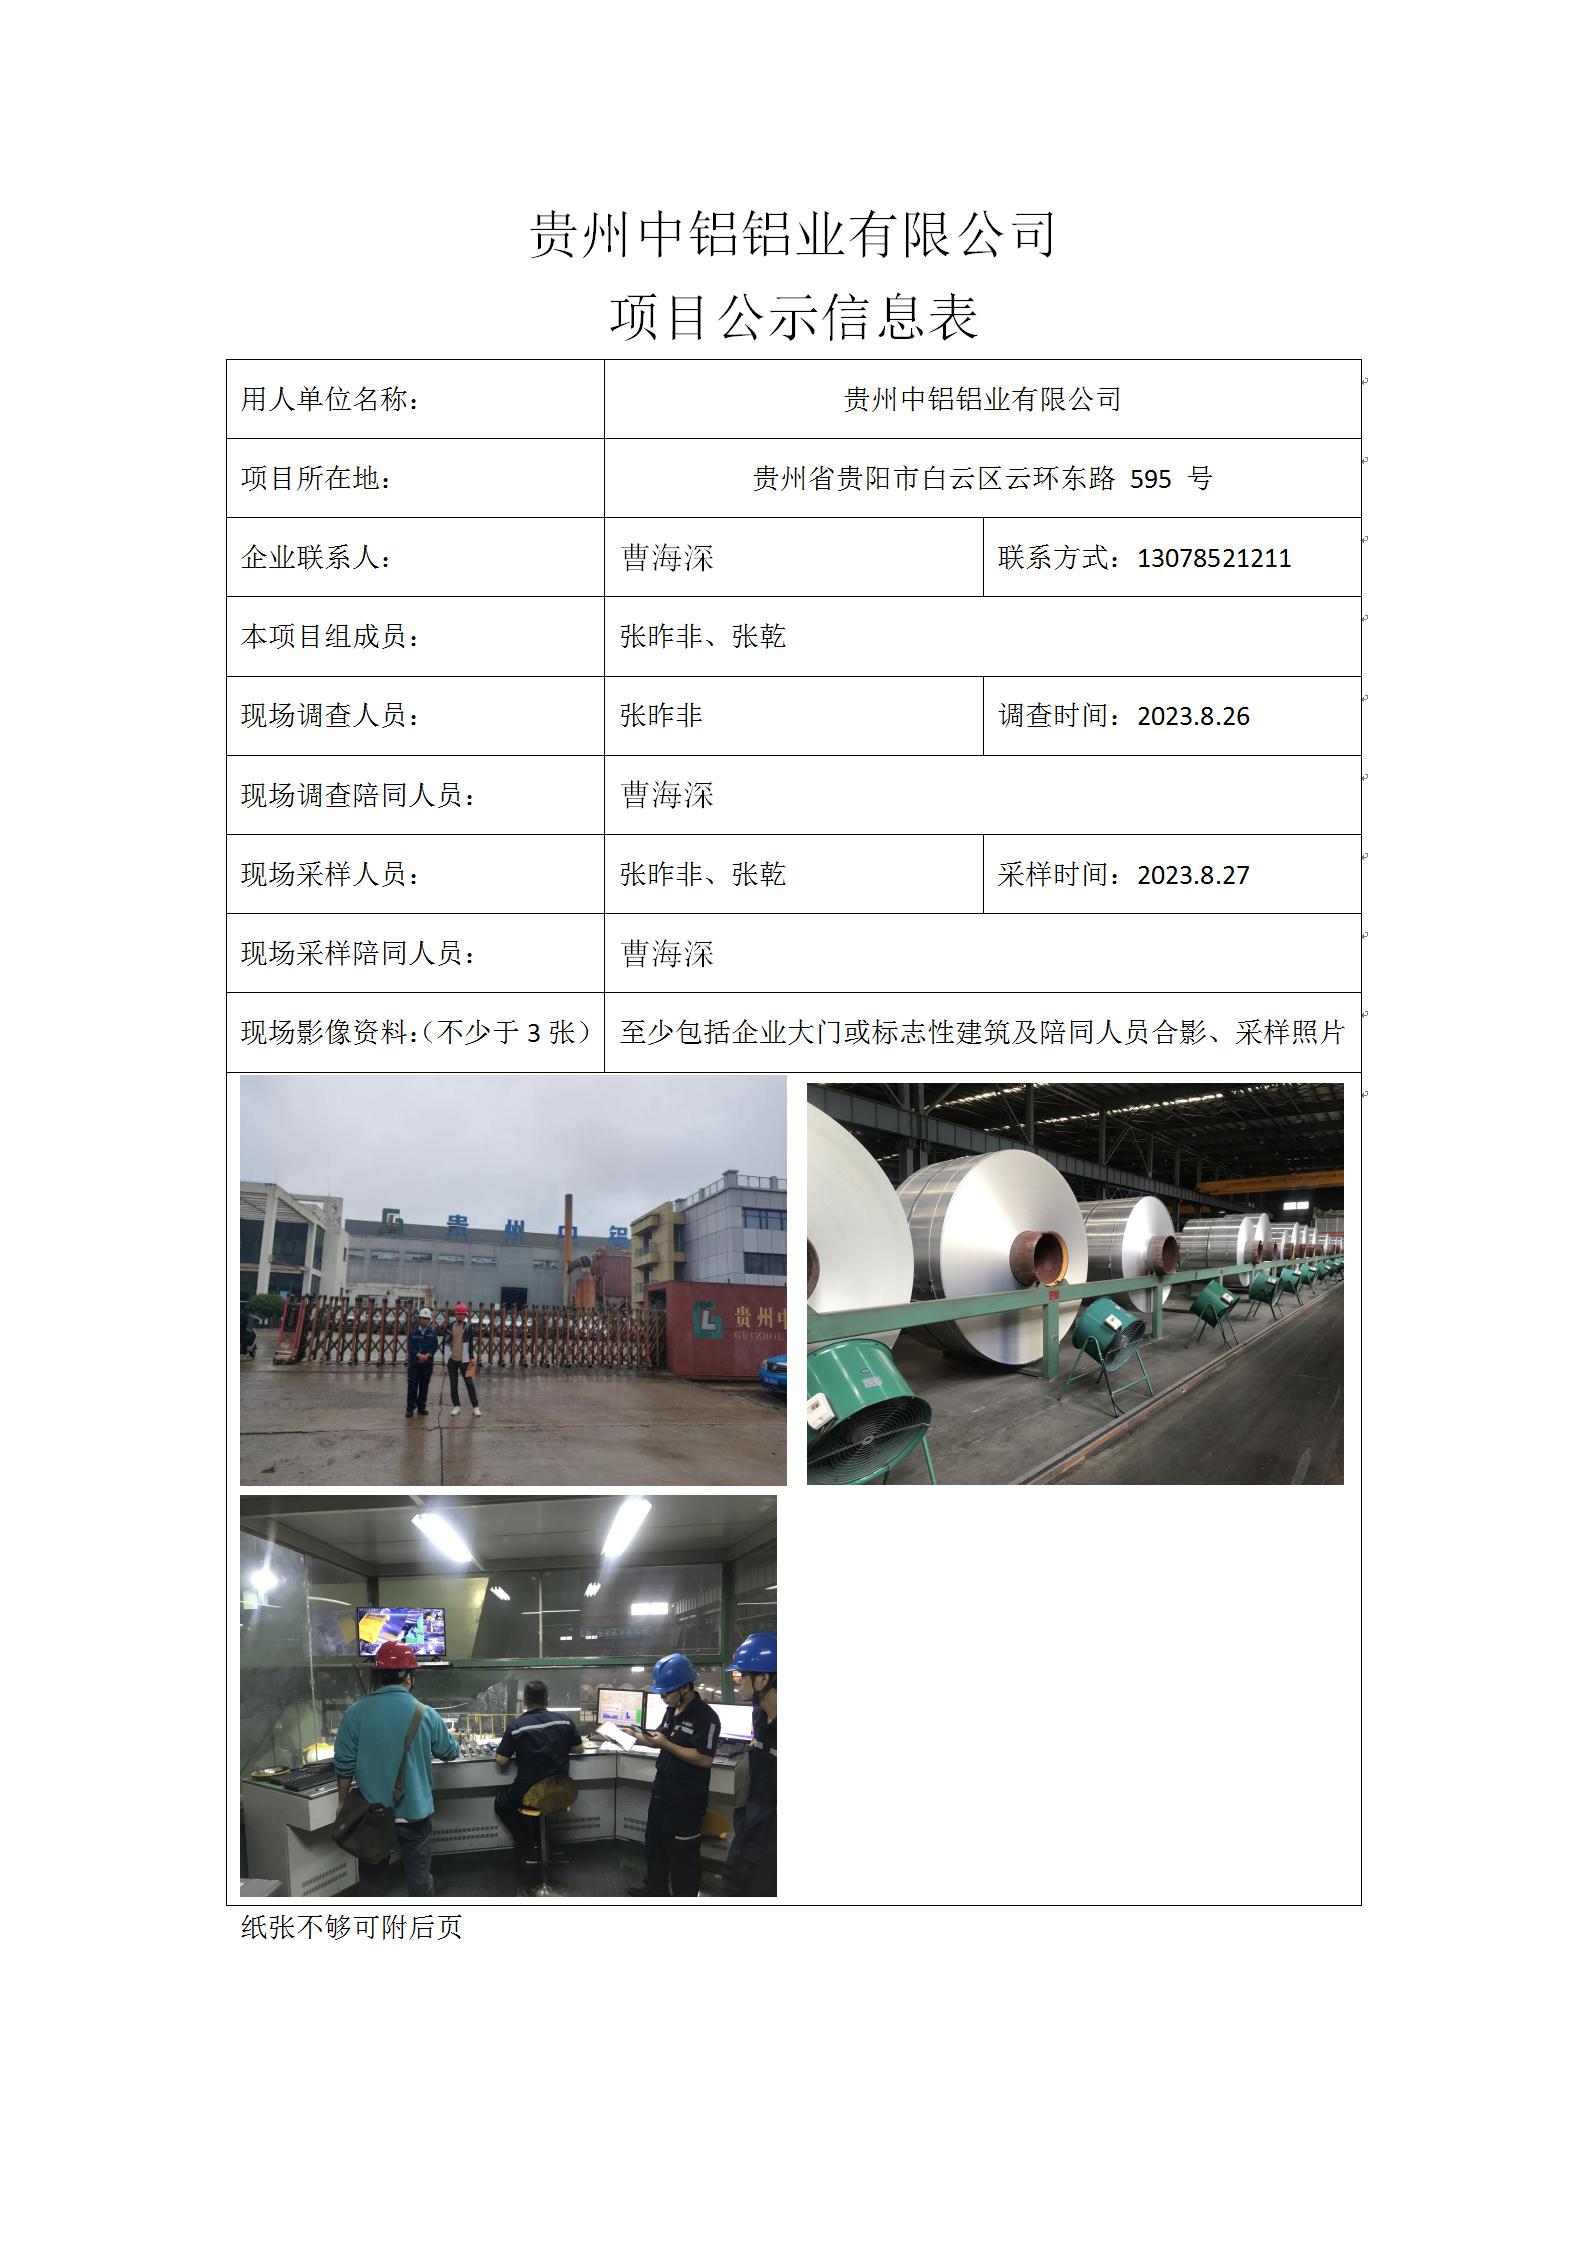 贵州中铝铝业有限公司2023.11.1张昨非 _01.jpg